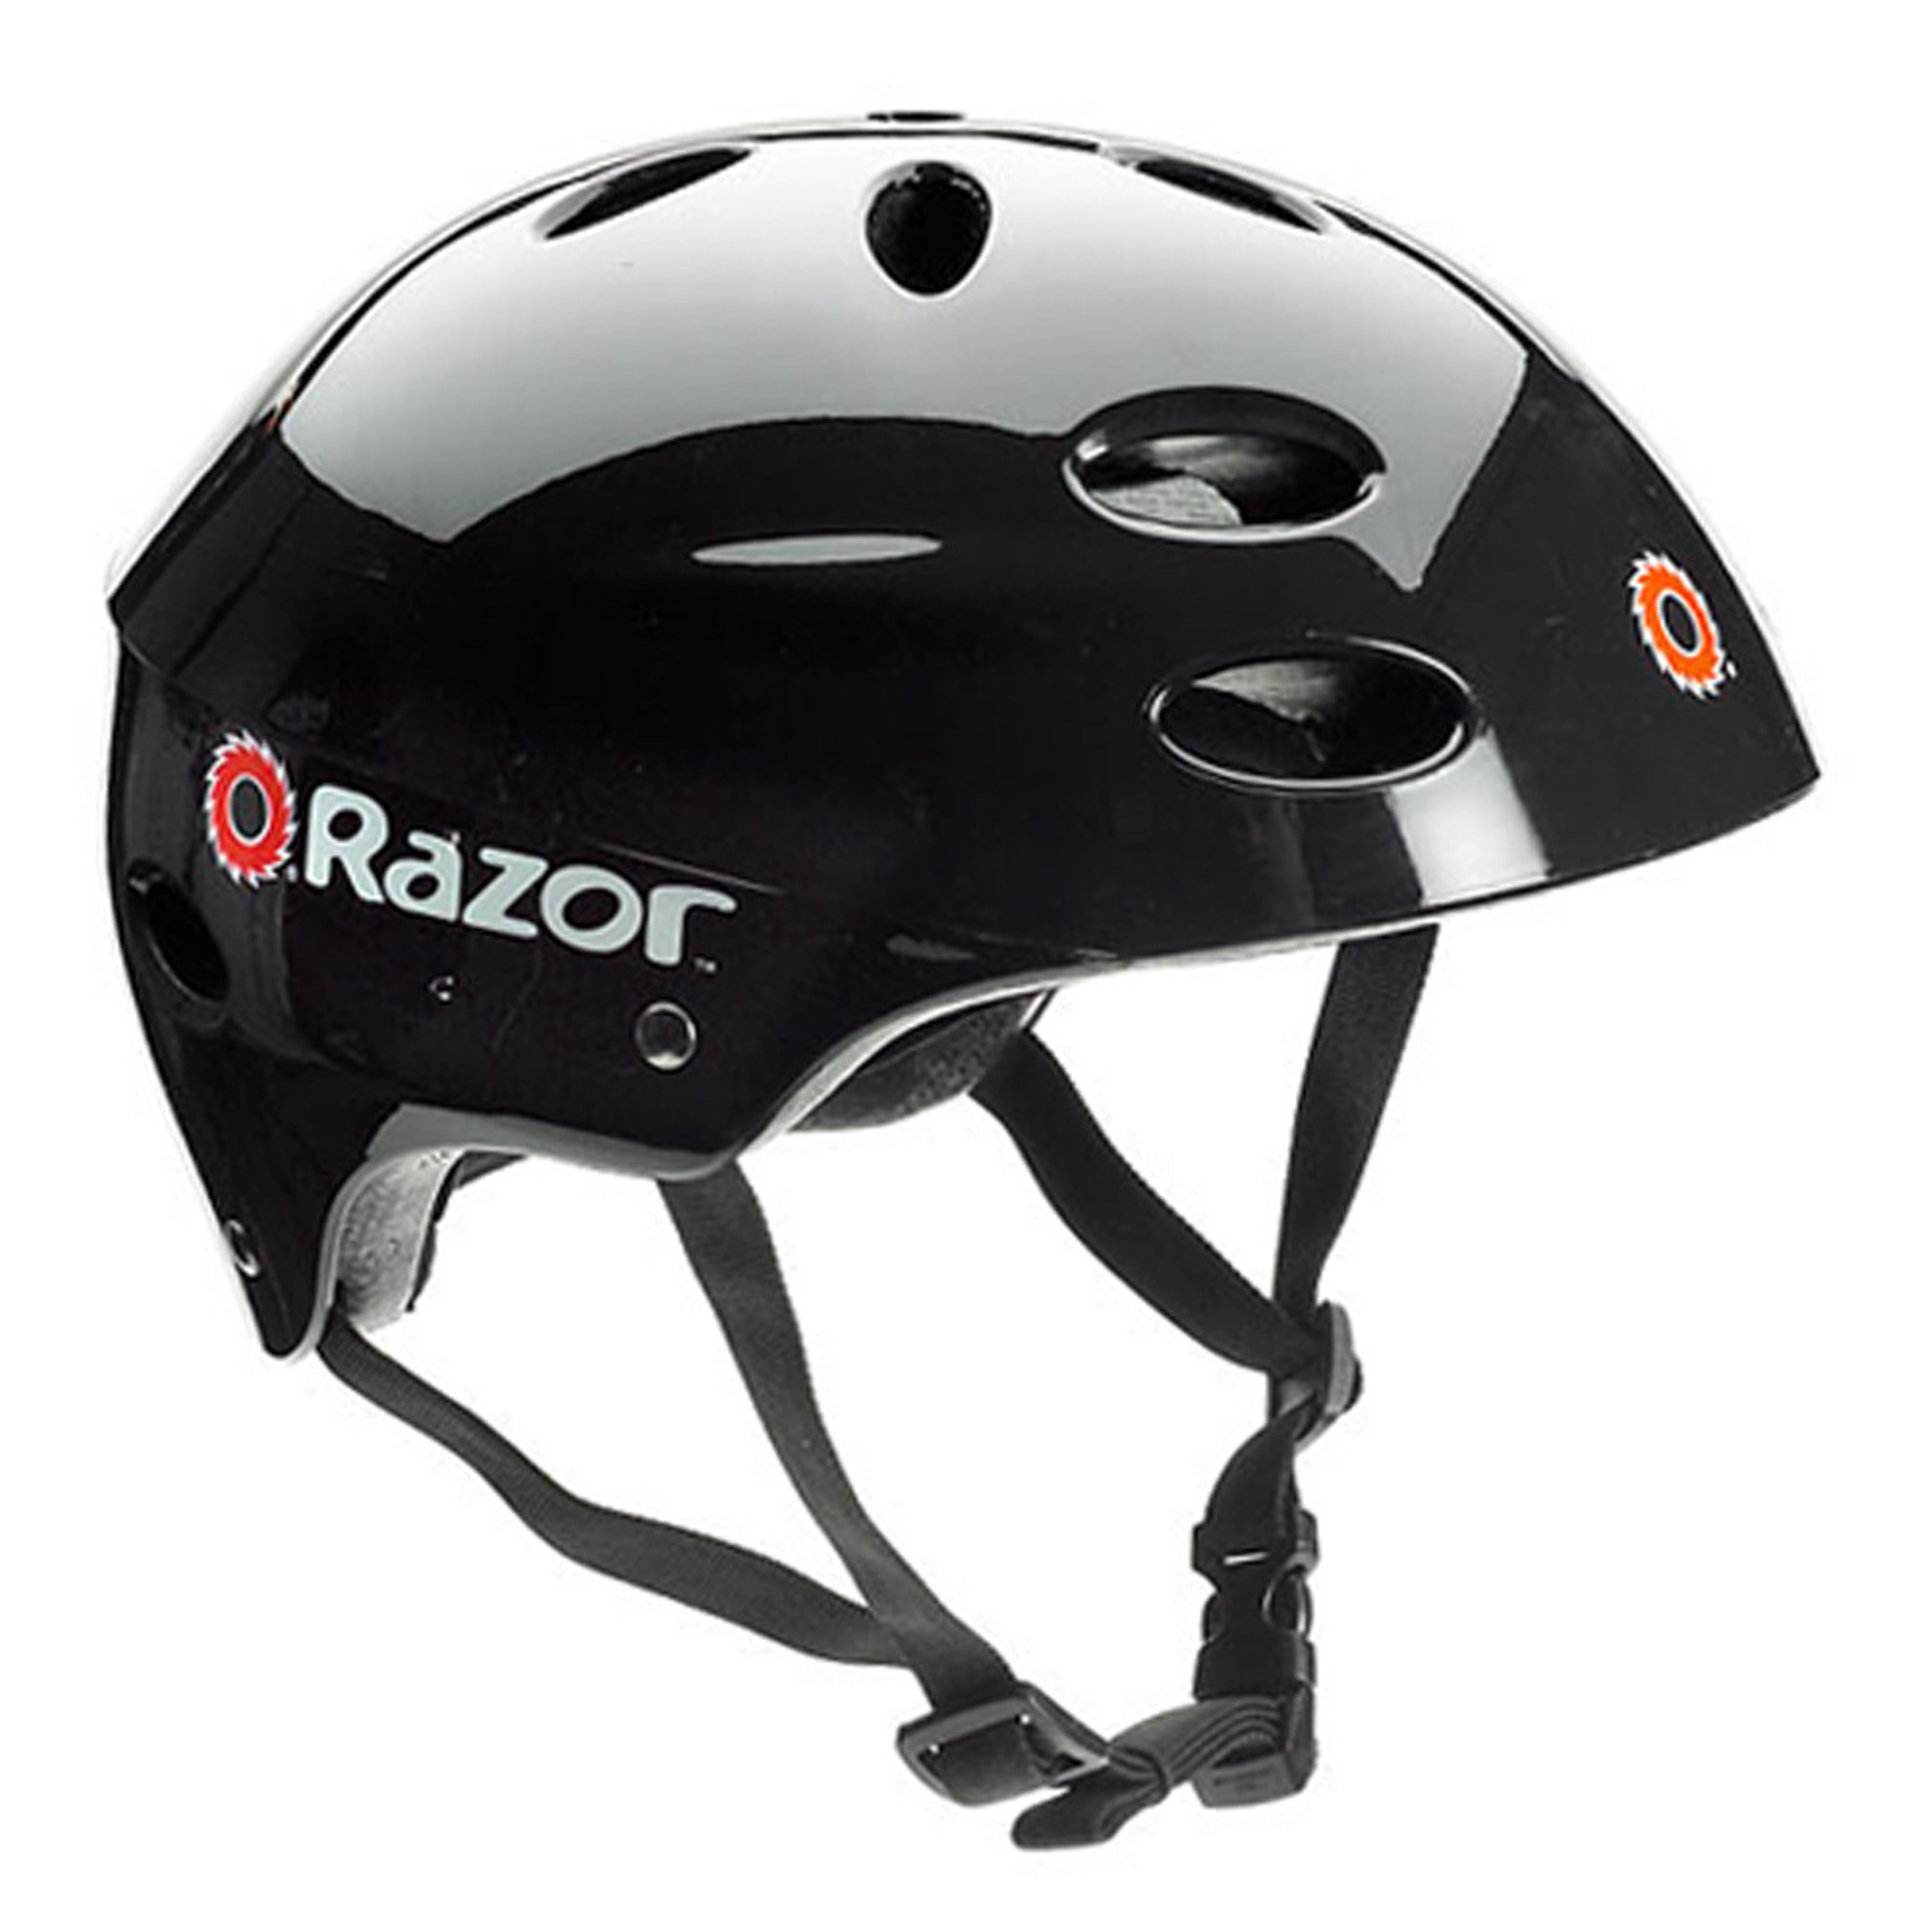 Razor&trade Agresive Multi-Sport Helmet - Black